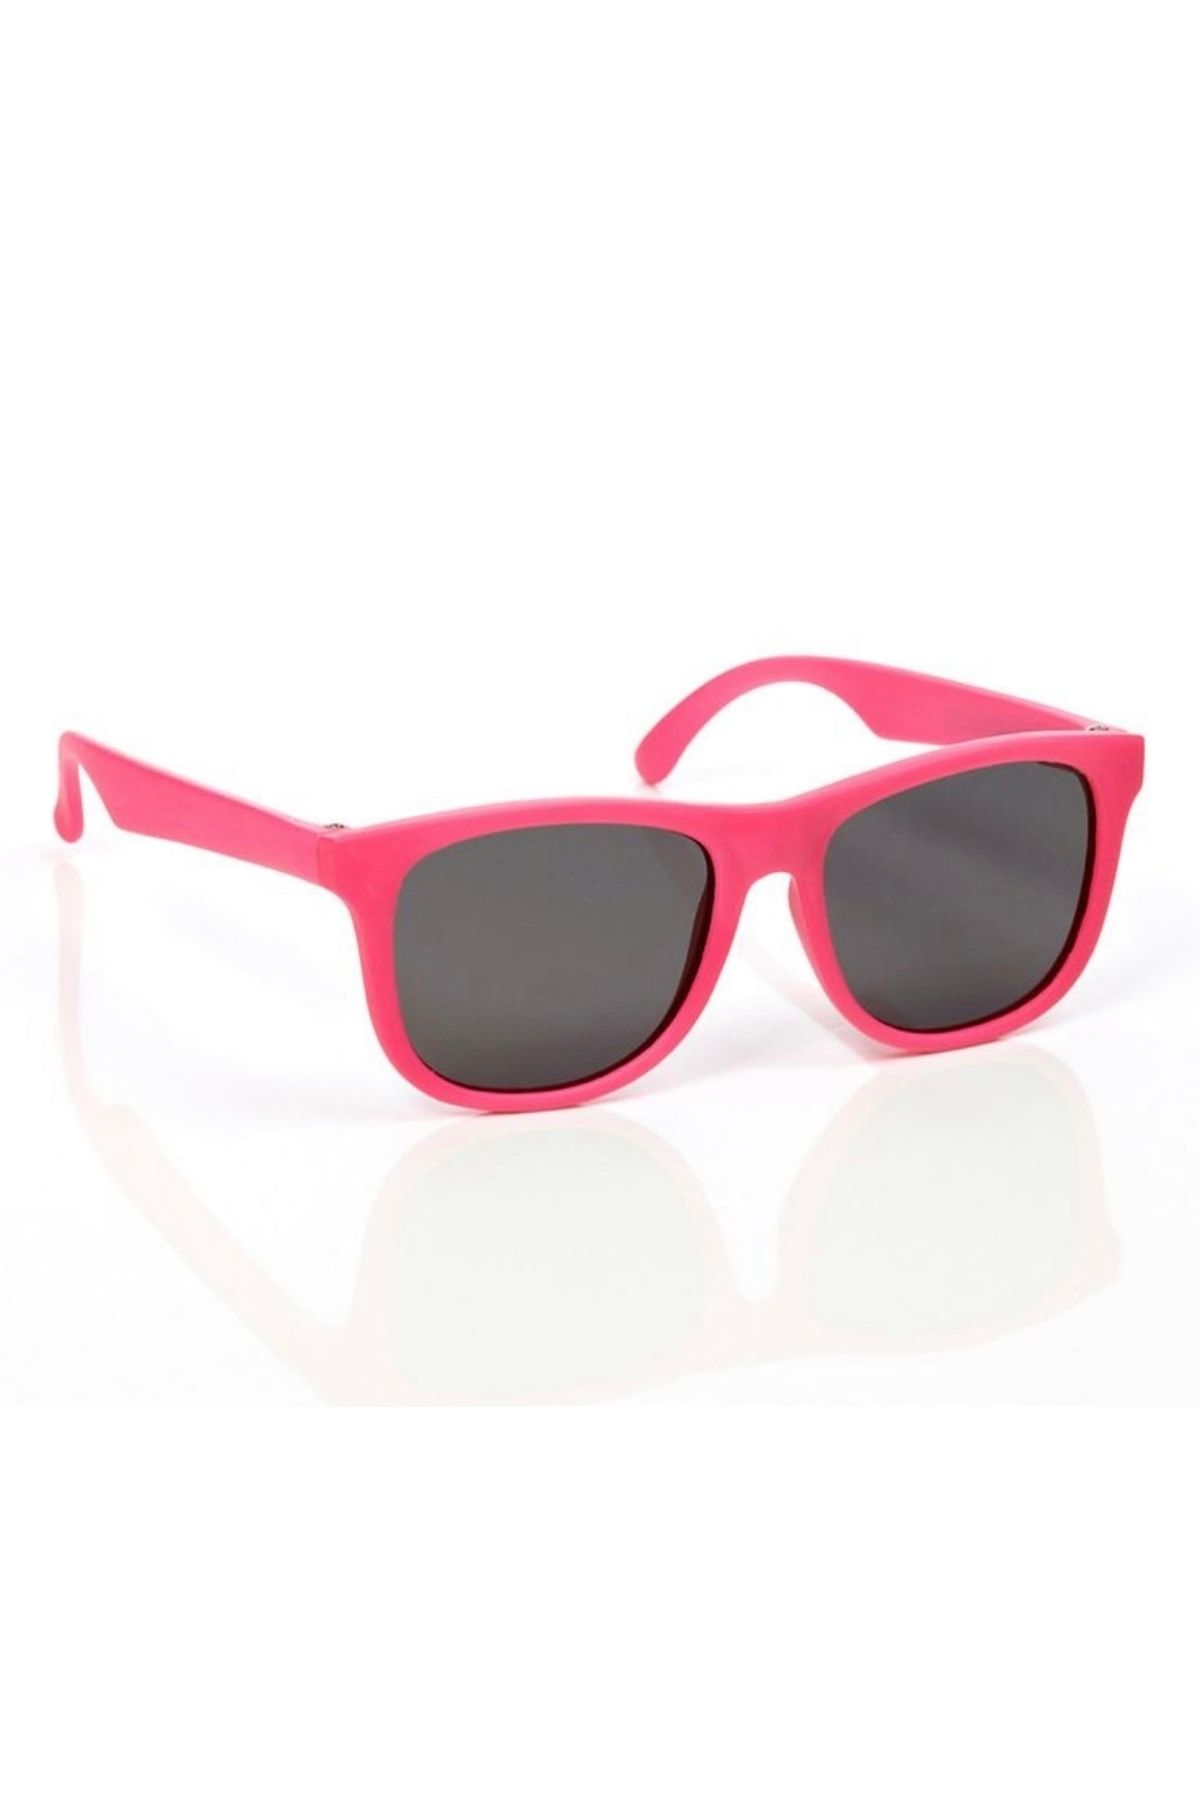 Розовые солнцезащитные очки купить. Розовые солнцезащитные очки. Детские солнцезащитные очки. Детские солнцезащитные очки розовые. Розовое очко.